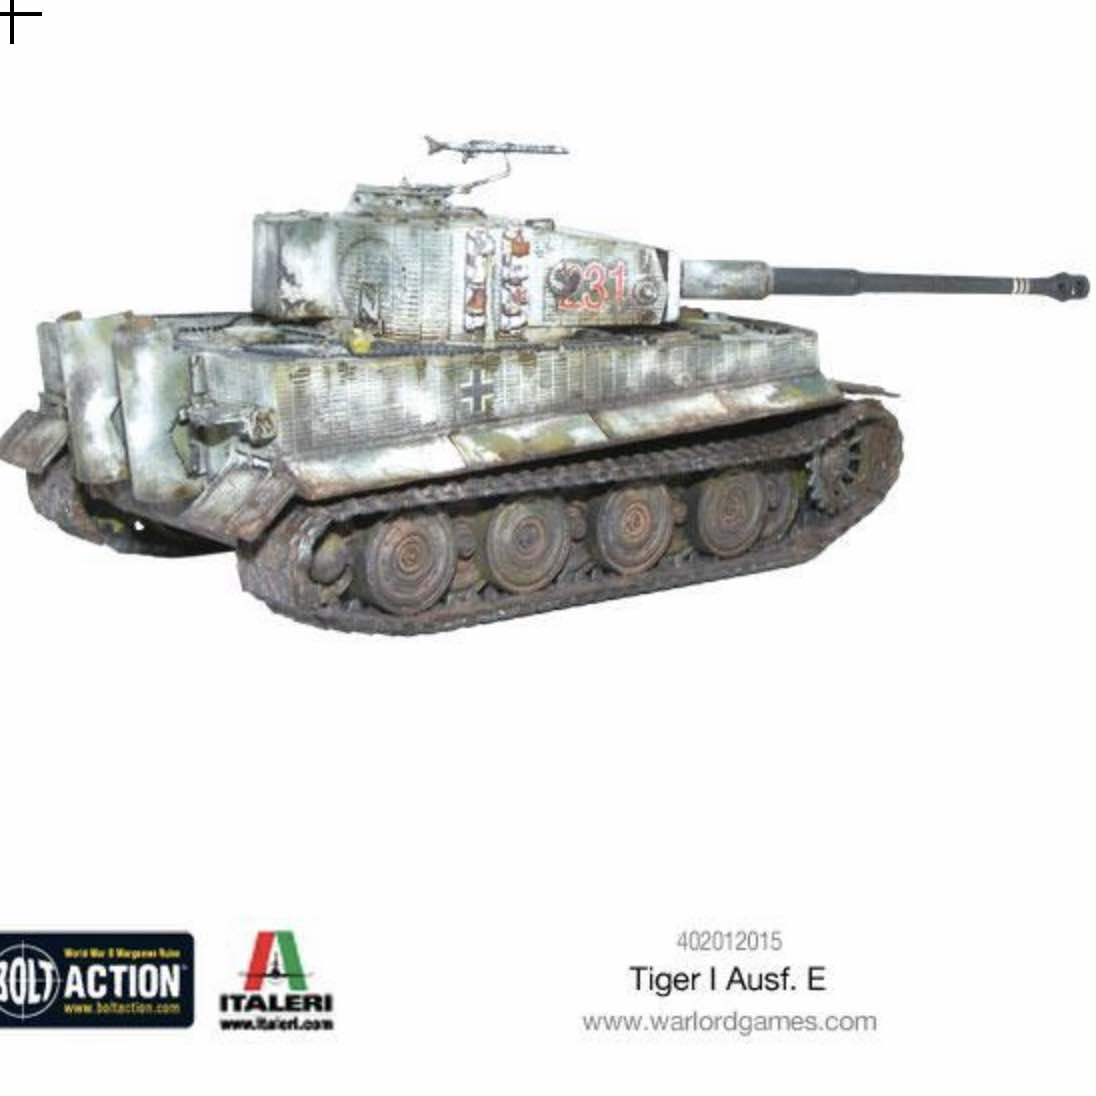 402012015 tiger I ausf E model_2_lateral